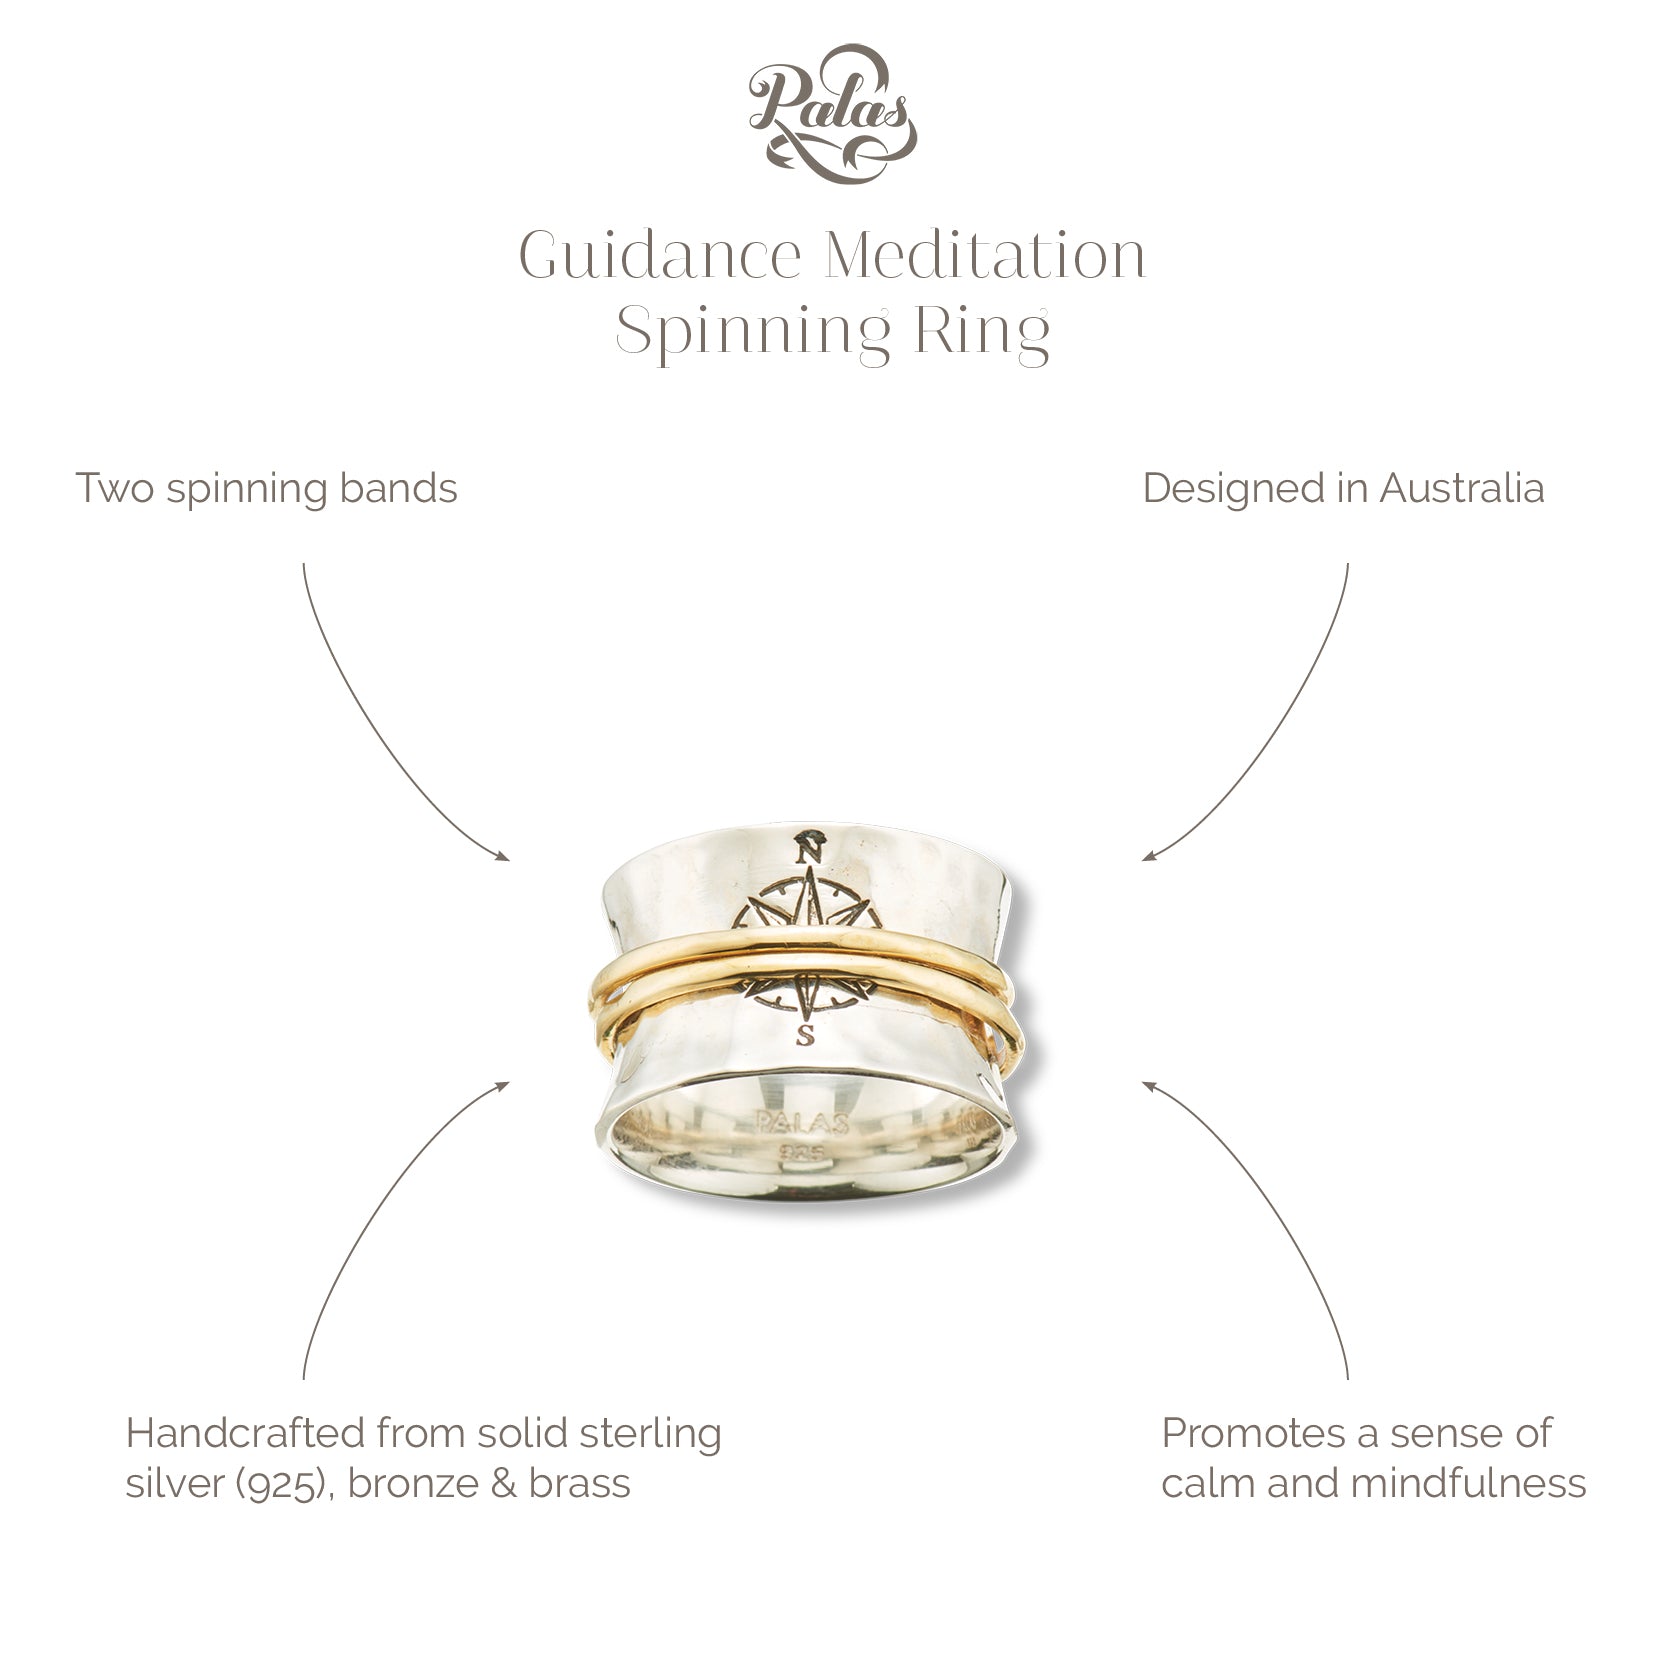 Guidance meditation spinning ring